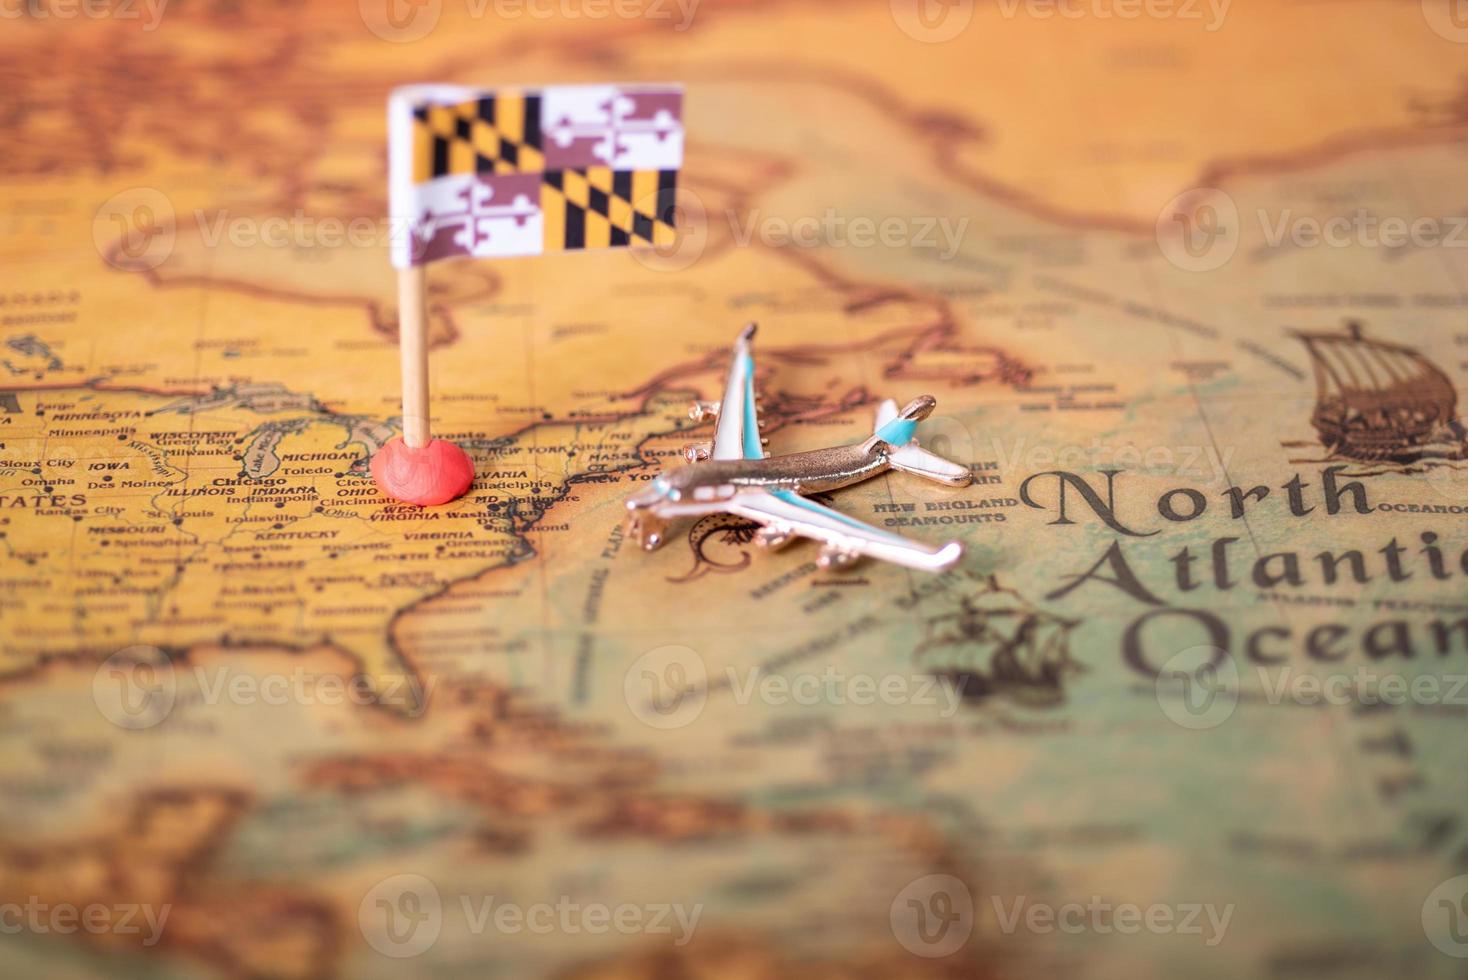 la bandera de maryland y el avión en el mapa del viejo mundo. foto